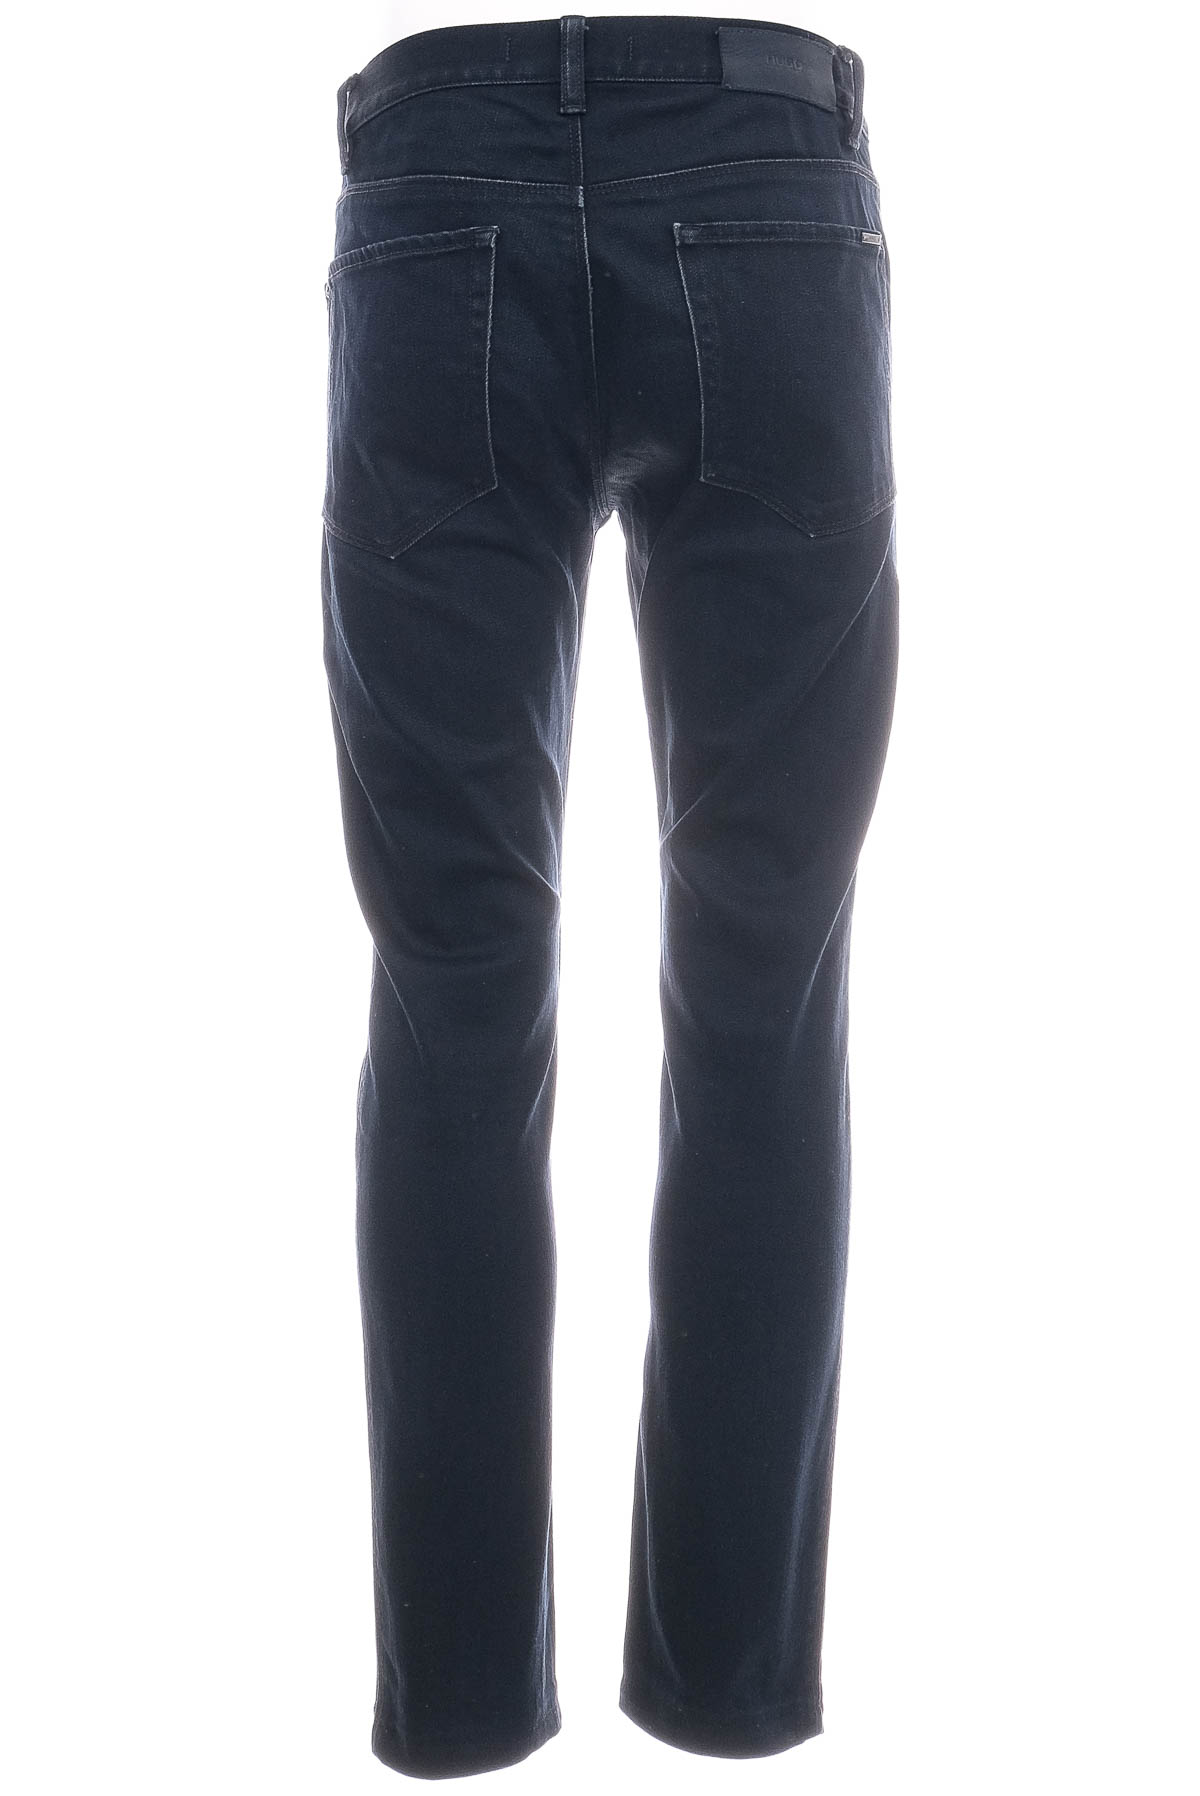 Men's jeans - HUGO BOSS - 1